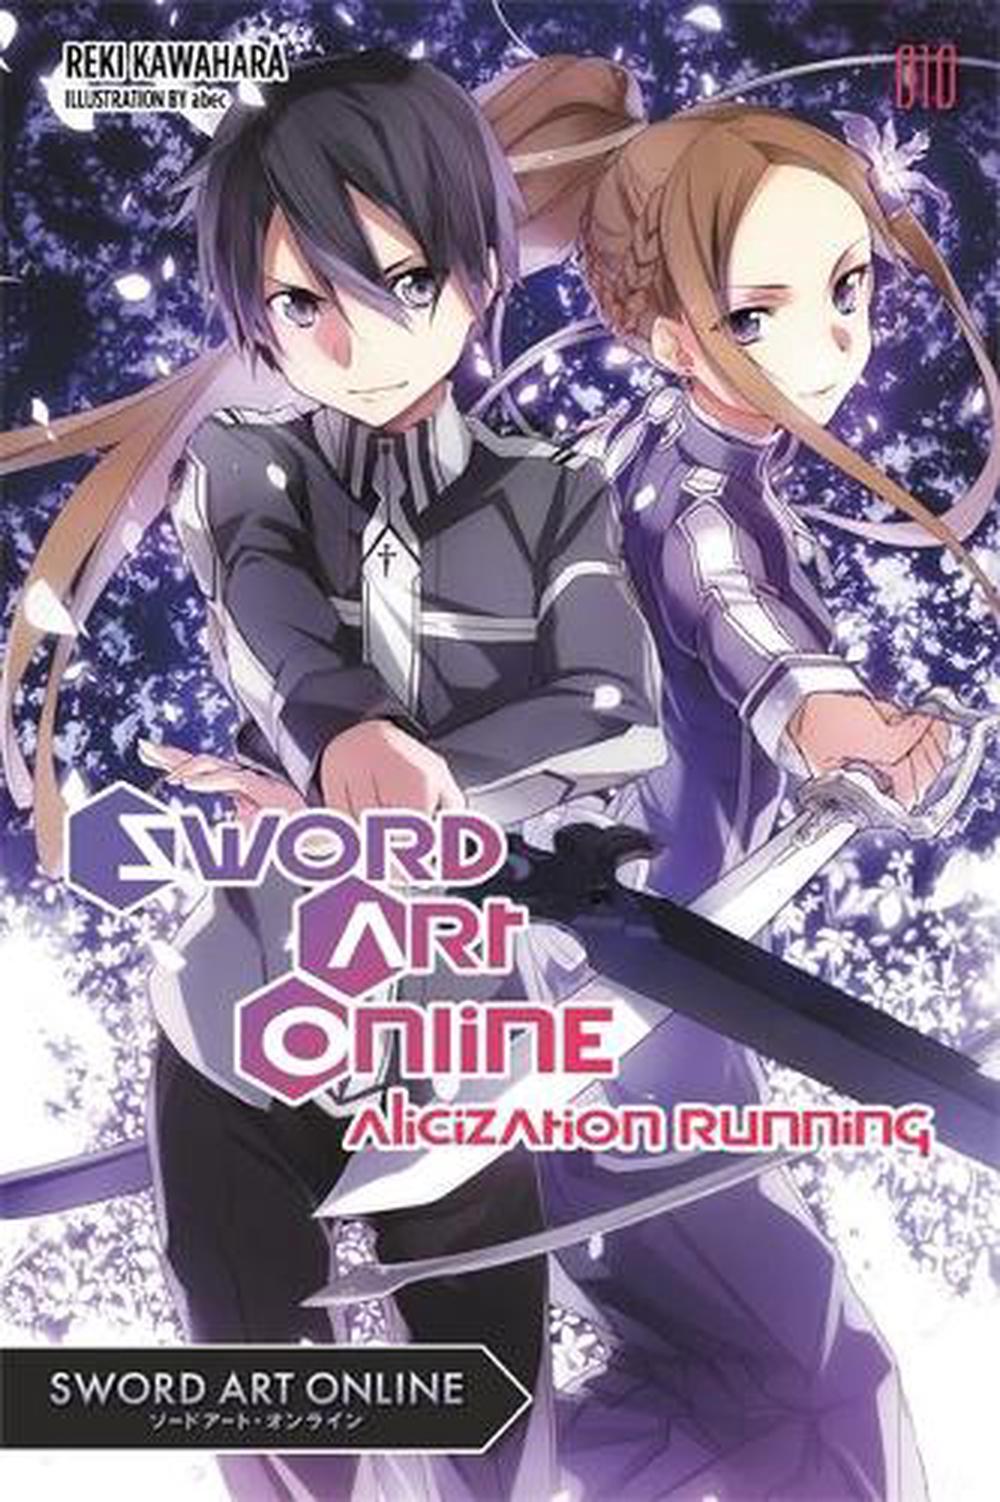 Sword Art Online 10 (light Novel) Alicization Running by